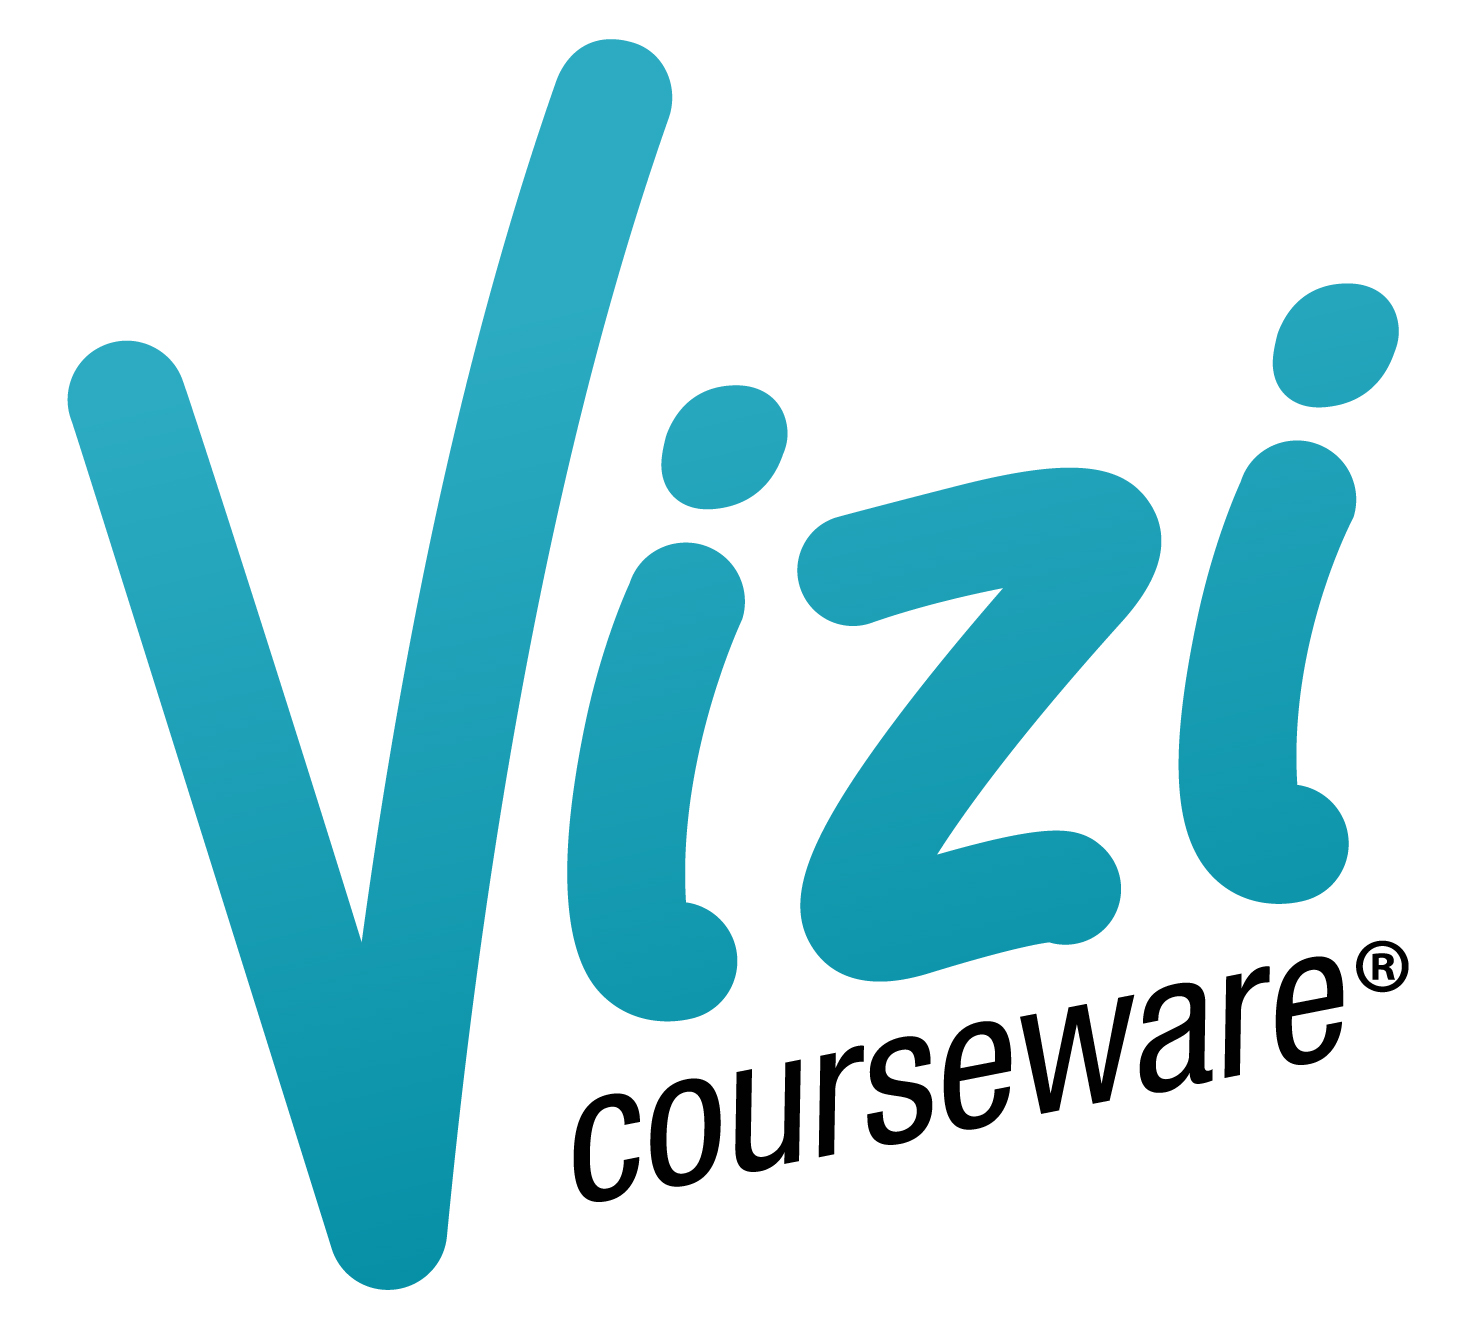 Vizi Courseware - New